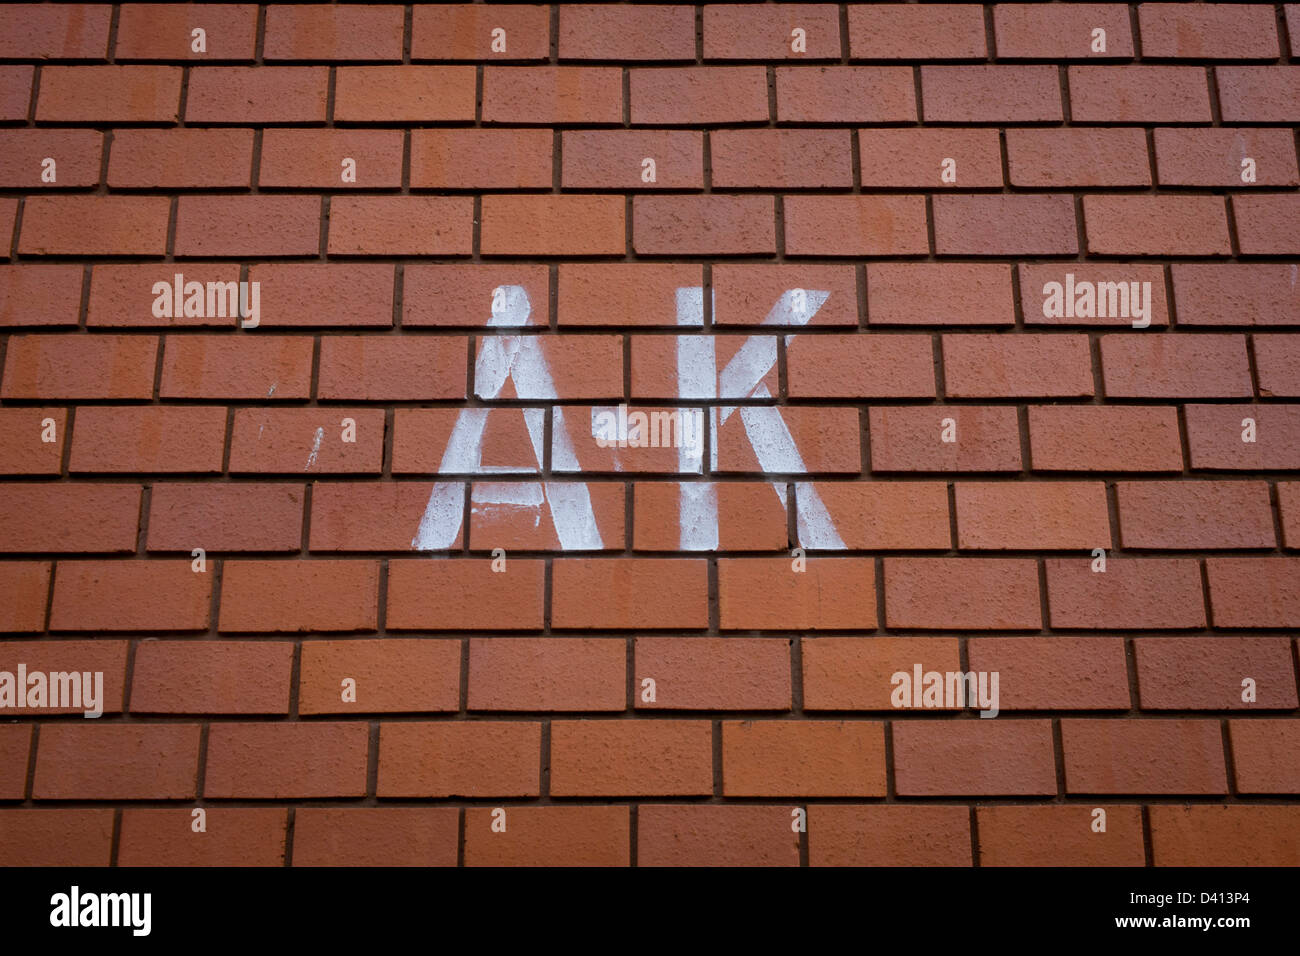 Die Lotnummer Buchstaben A-K gesprüht auf eine Mauer von einem modernen Wohngebiet im Norden London von Kings Cross. Stockfoto